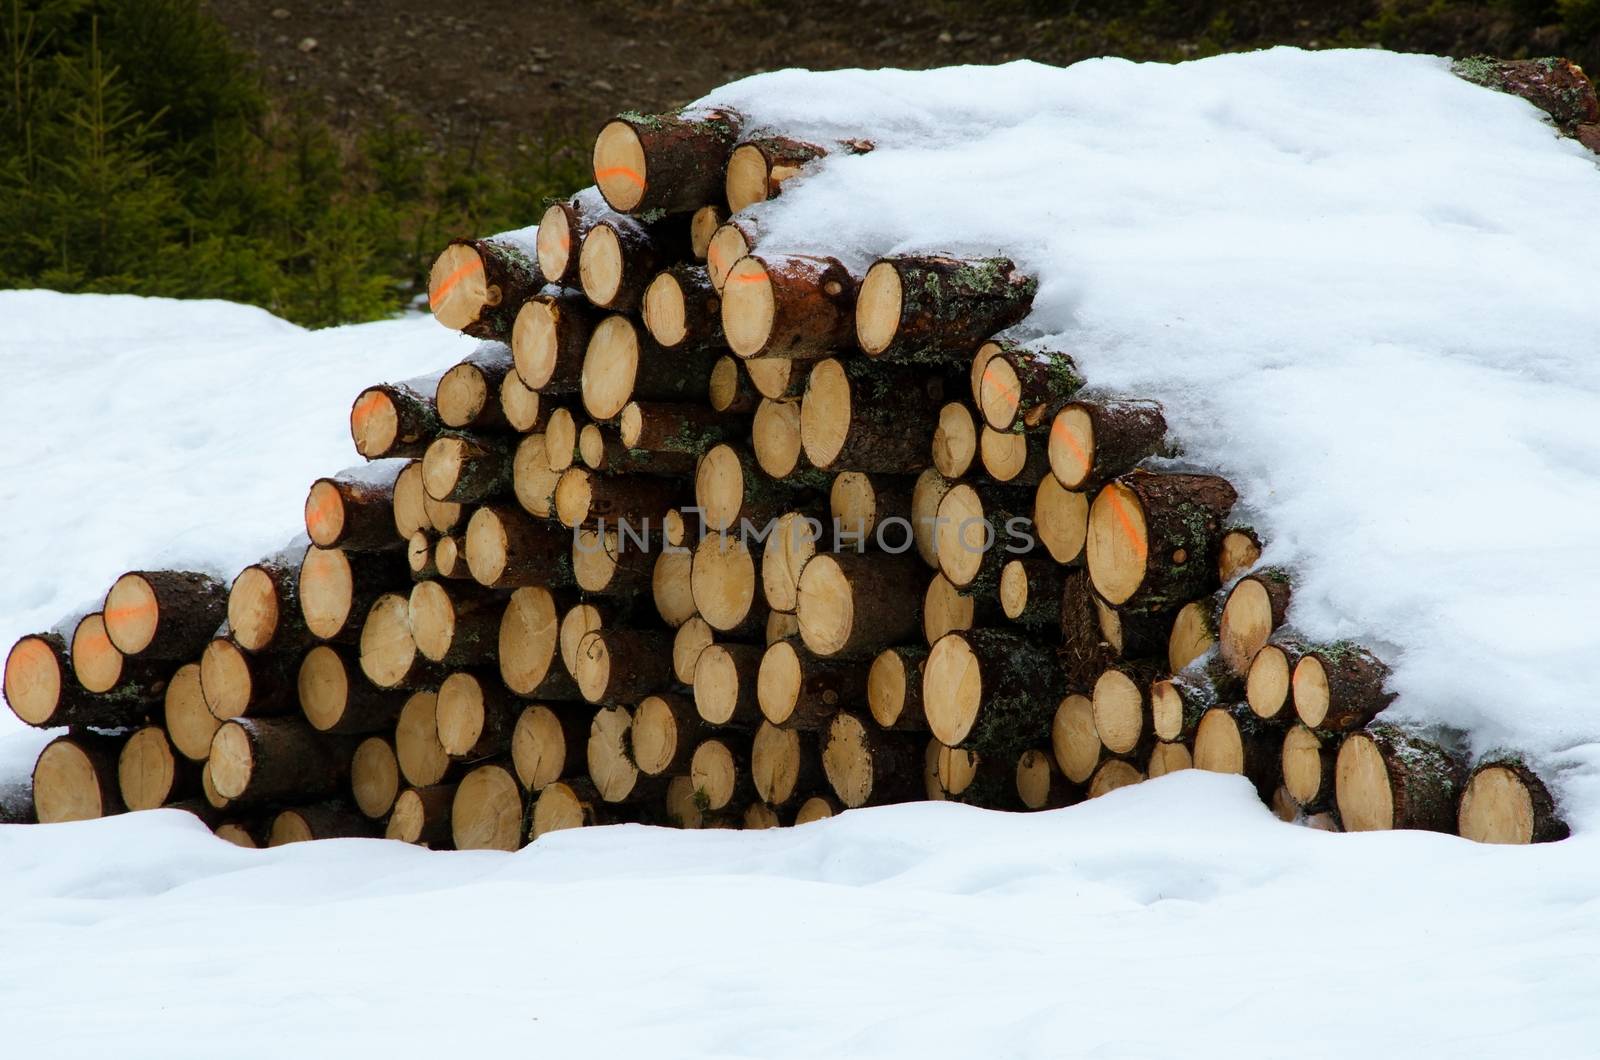 Lot of logs under snow in damaged landscape.